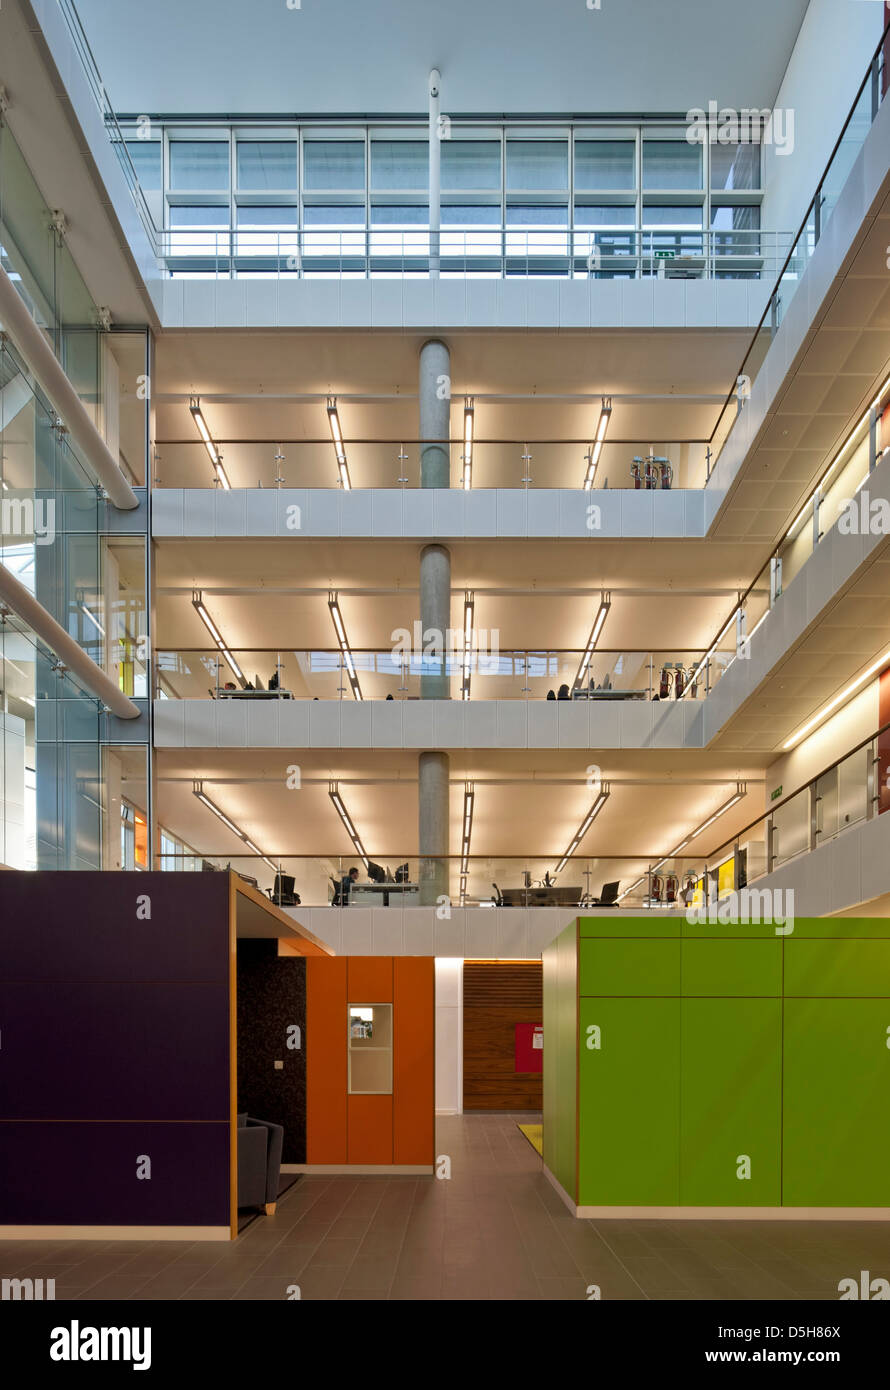 Le quadrant:MK, Milton Keynes, Royaume-Uni. Architecte : GMW Architectes, 2012. Réunions en région pour le côté de l'atrium principal. Banque D'Images